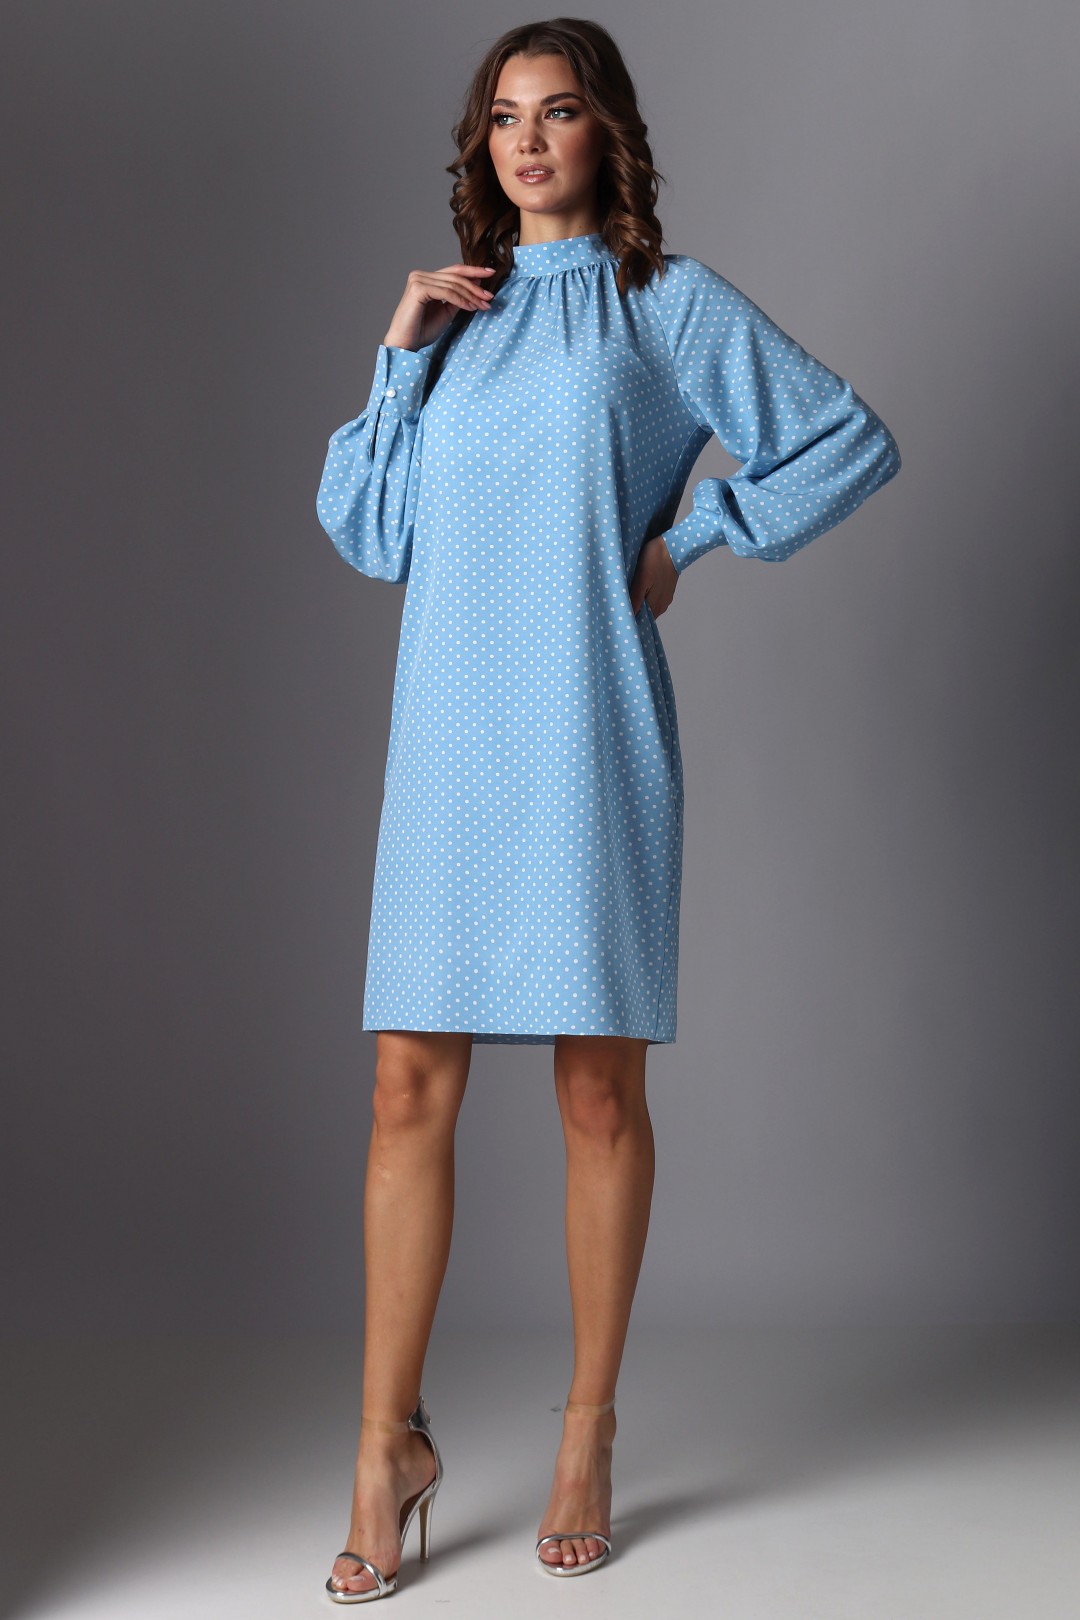 Платье МиА-Мода 1216  голубой в белый горох